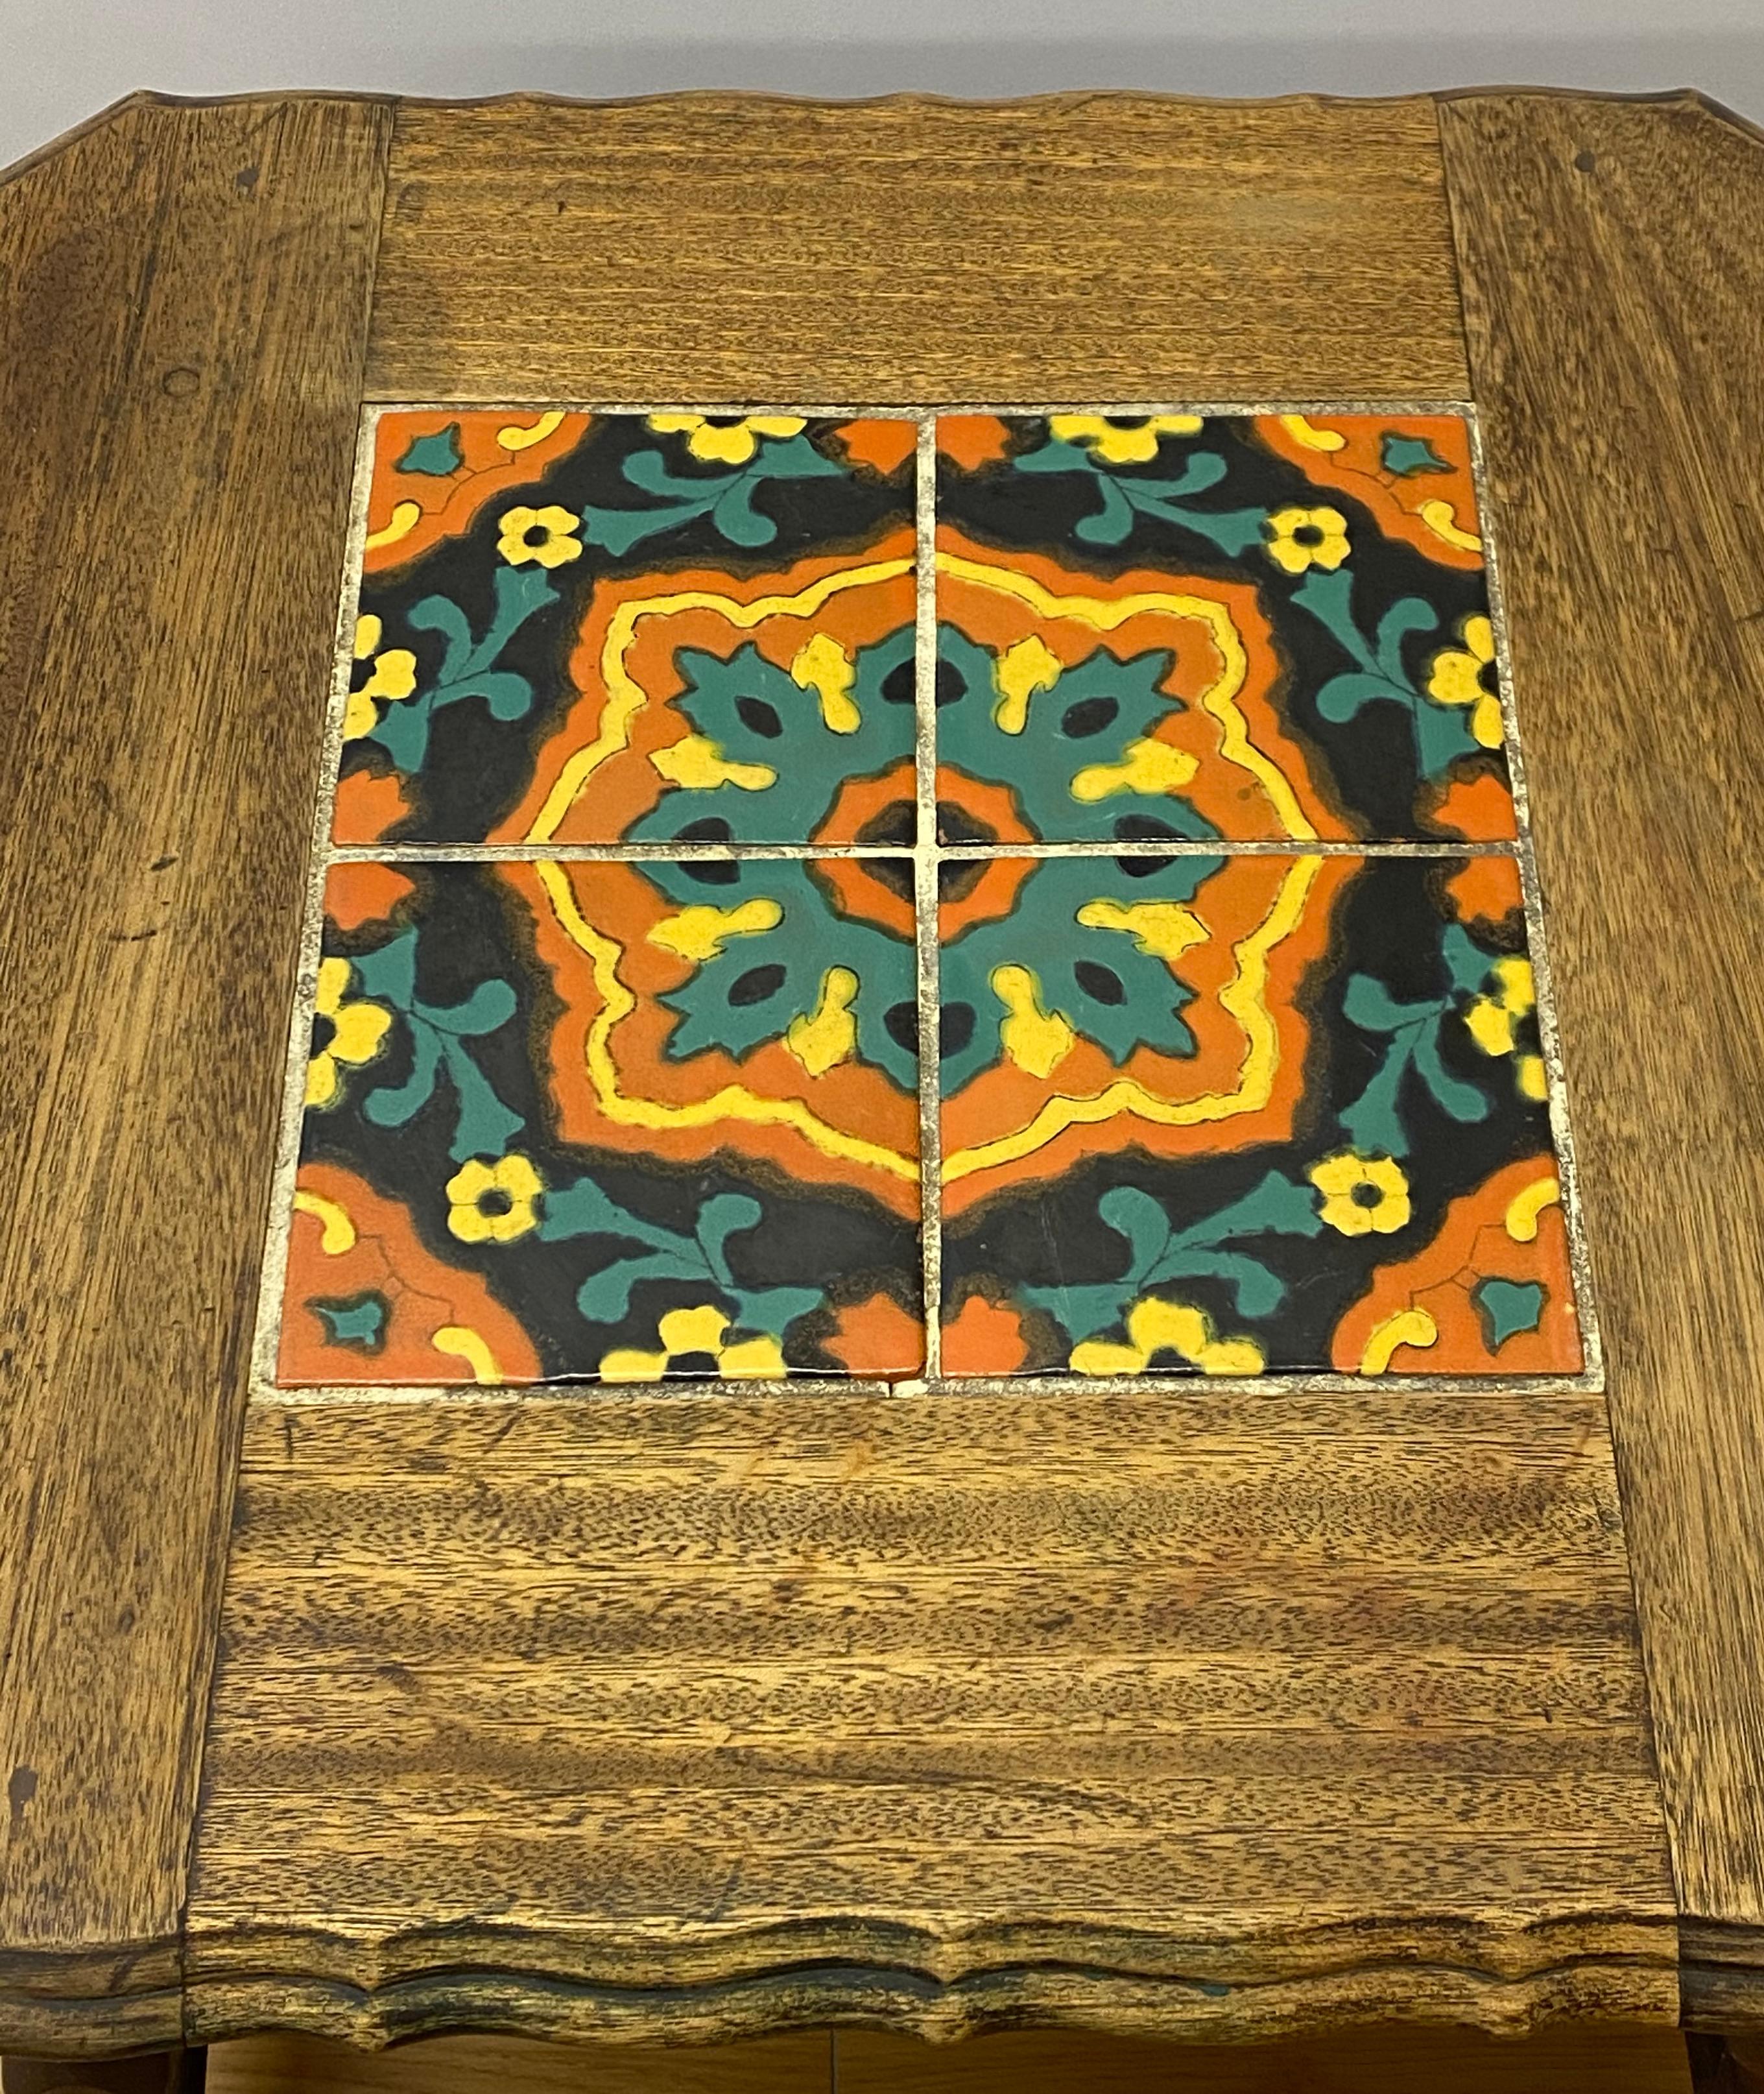 Table d'appoint Arts & Crafts en chêne de style missionnaire à plateau en carreaux, vers 1920.

Bord festonné avec plateau en carreaux émaillés

Dimensions : 22